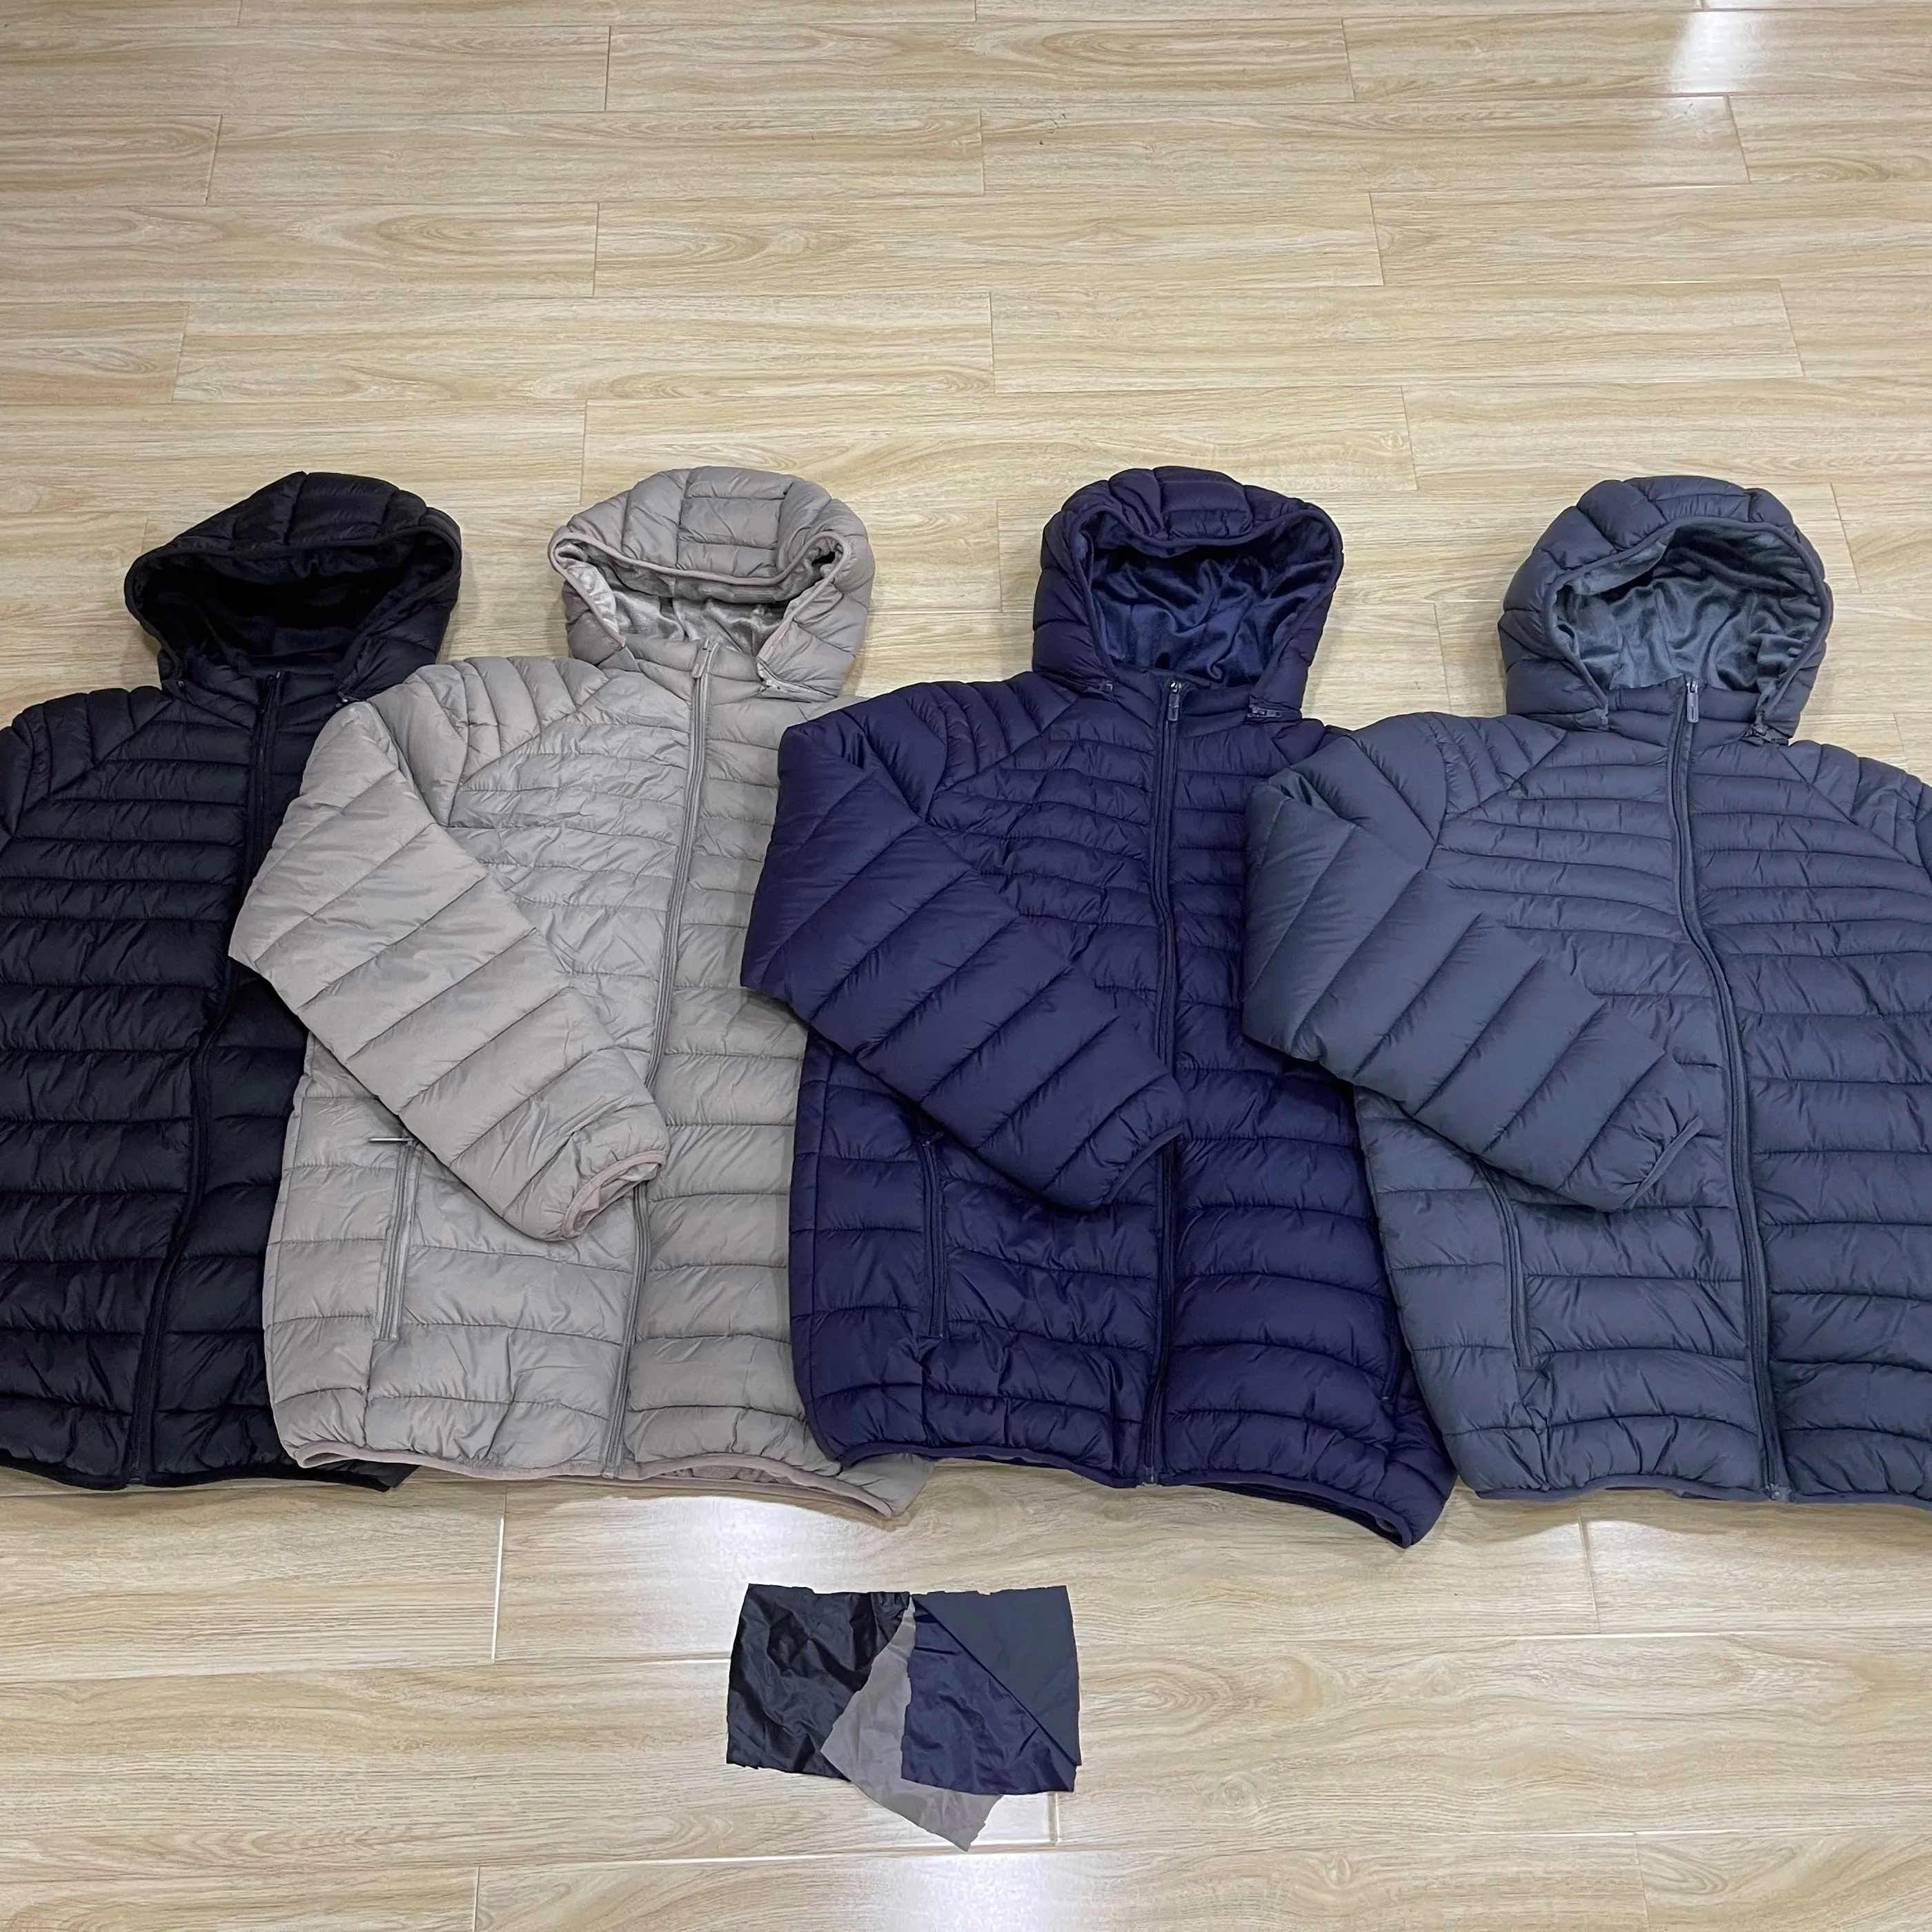 Homens Novo Design Inverno Puffer Quente Padding jaqueta Fabricante Inverno Ao Ar Livre Casaco Acolchoado